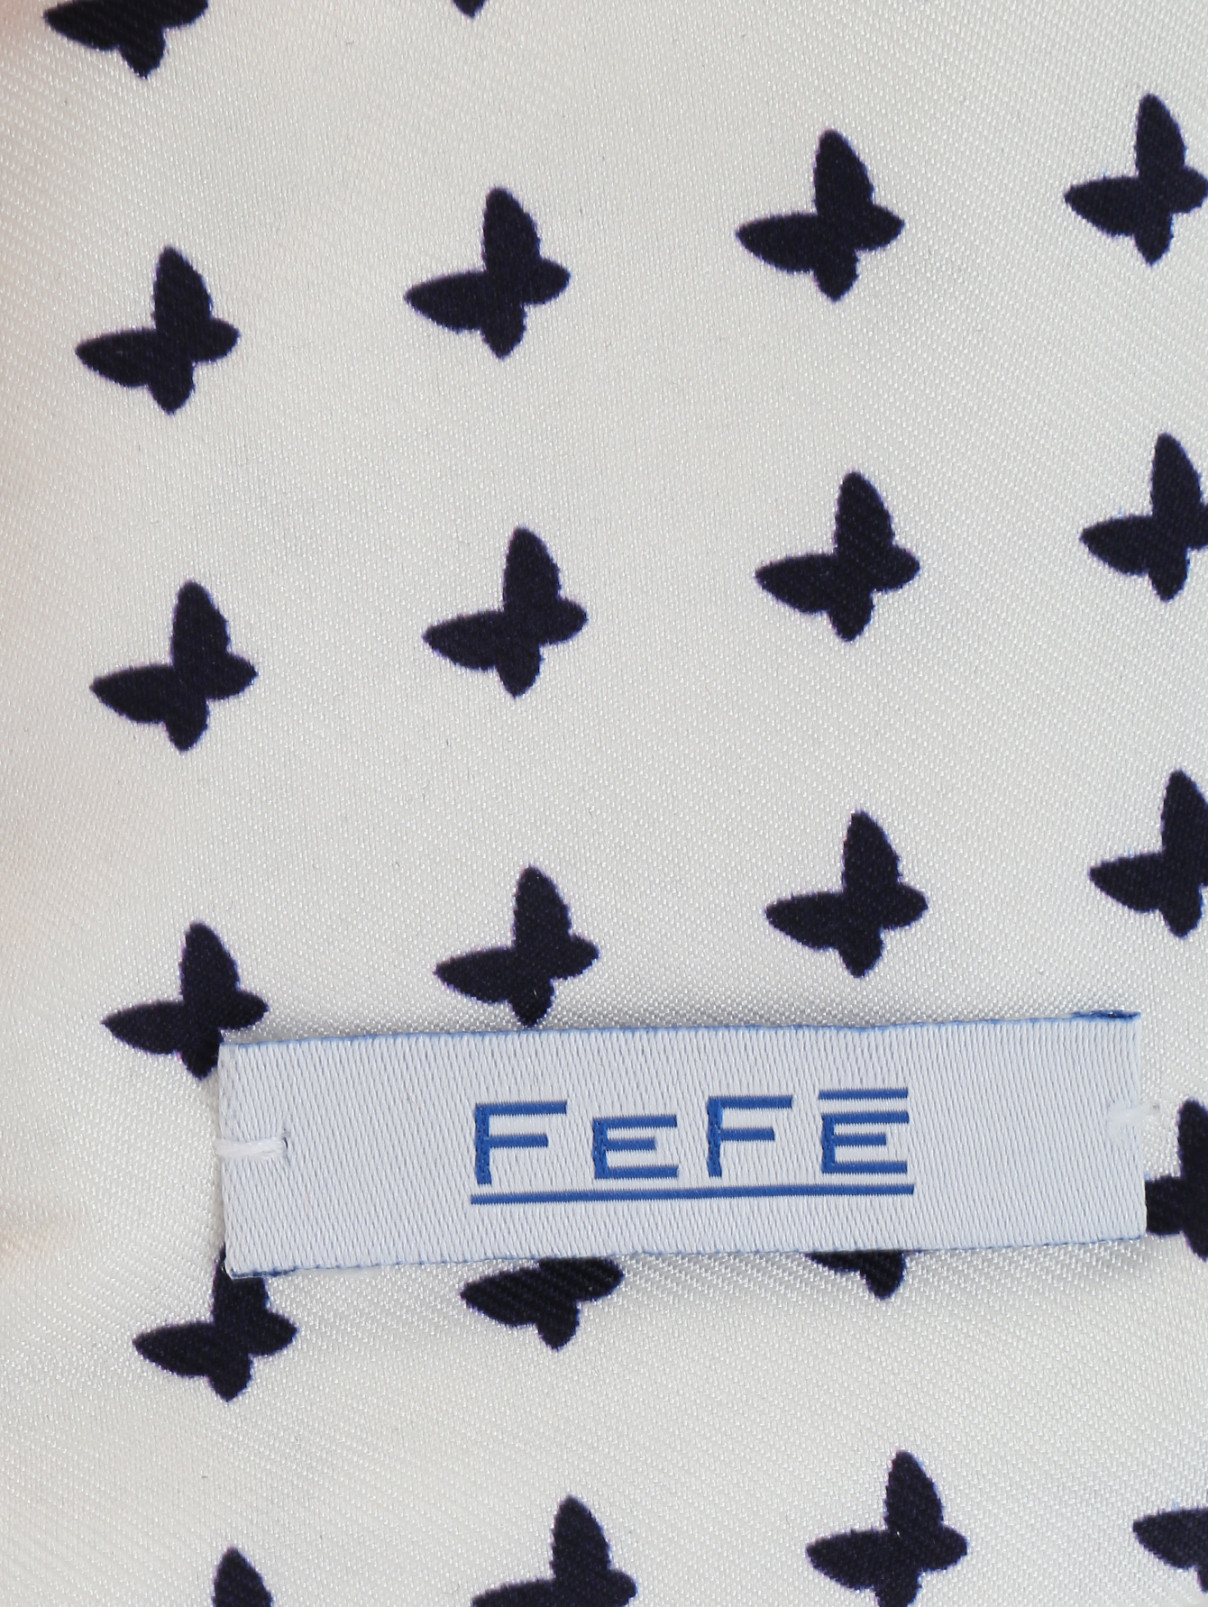 Чехол для IPhone из шелка с узором Fefe  –  Деталь  – Цвет:  Белый